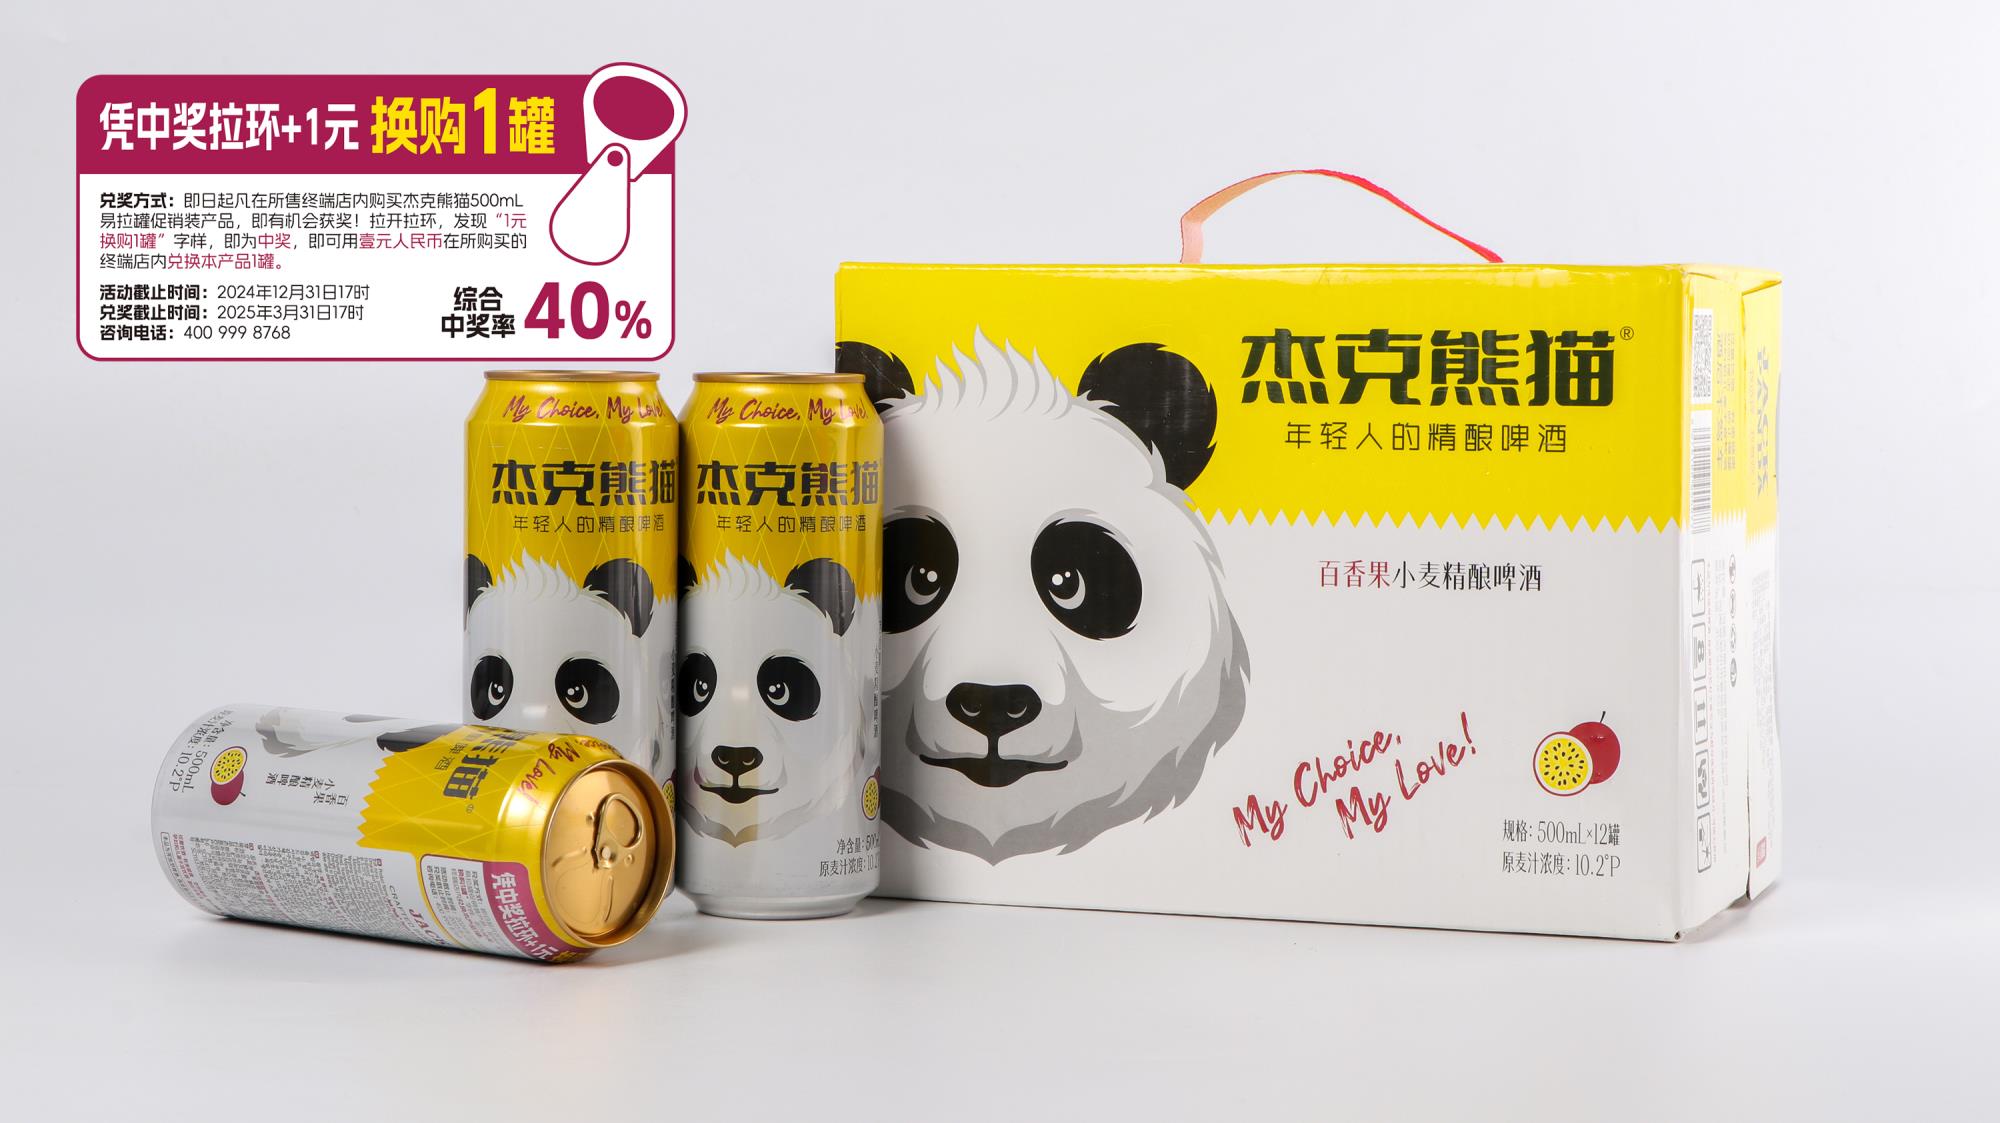  杰克熊猫百香果小麦精酿啤酒500ml带奖